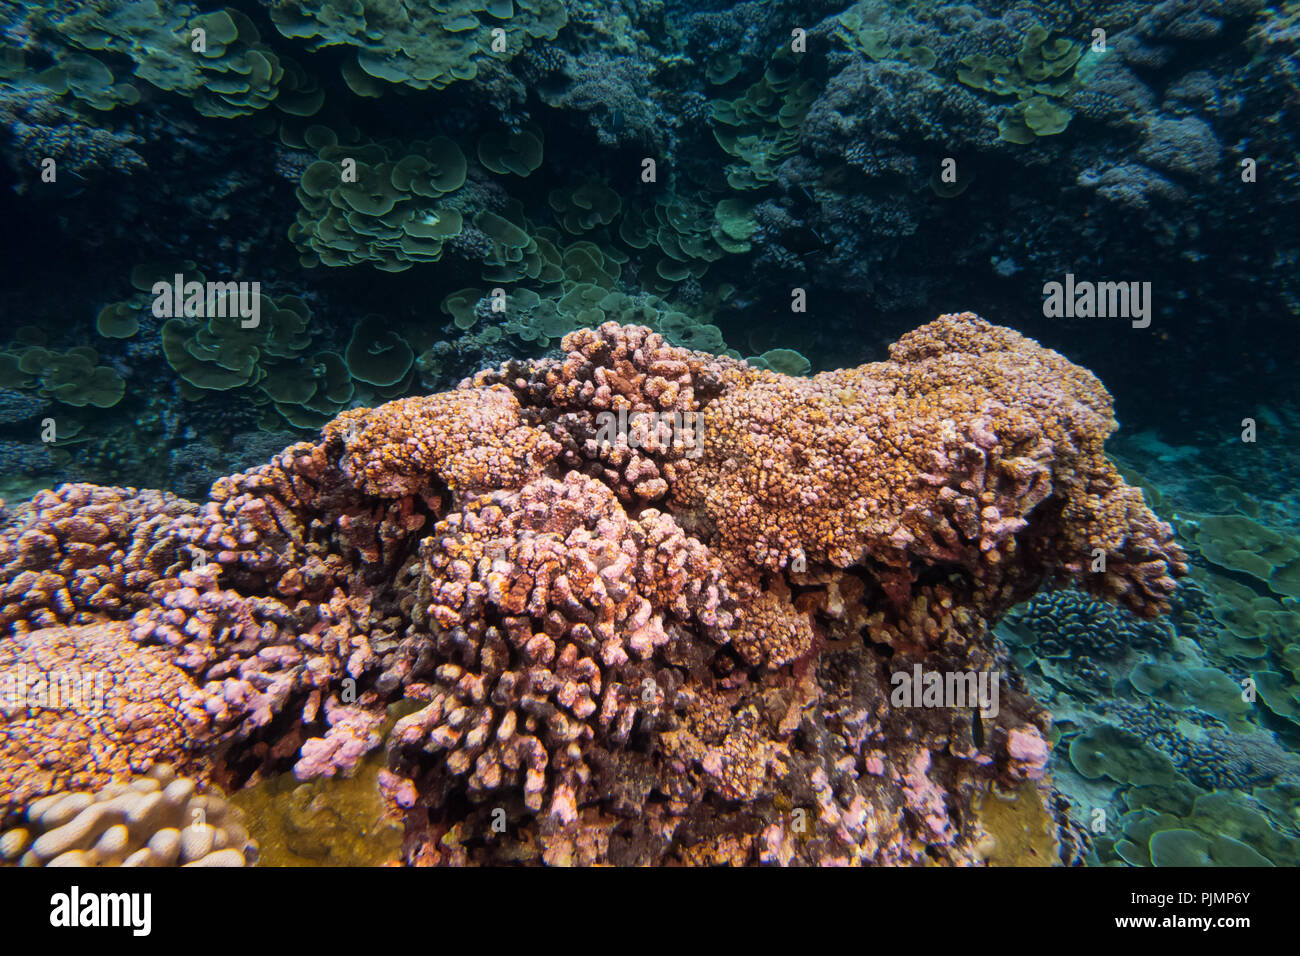 El buceo en el arrecife del atolón del milenio en Kiribati mostrando el coral muerto del descoloramiento de los corales debido al cambio climático. Foto de stock